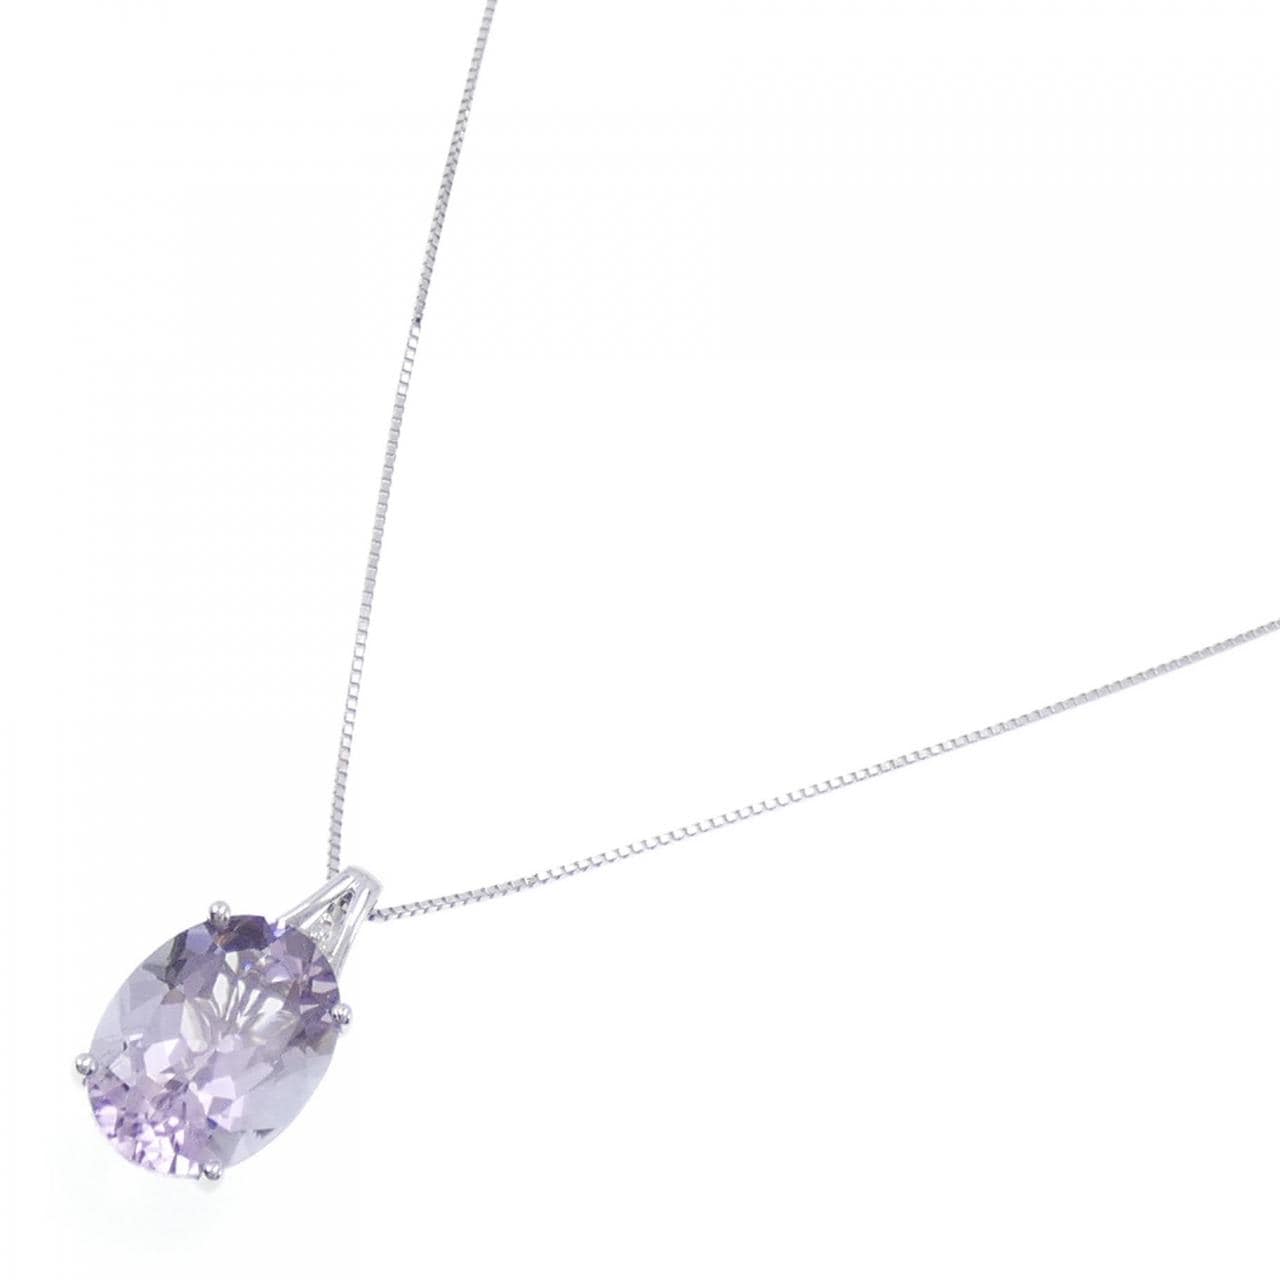 K18WG紫水晶项链